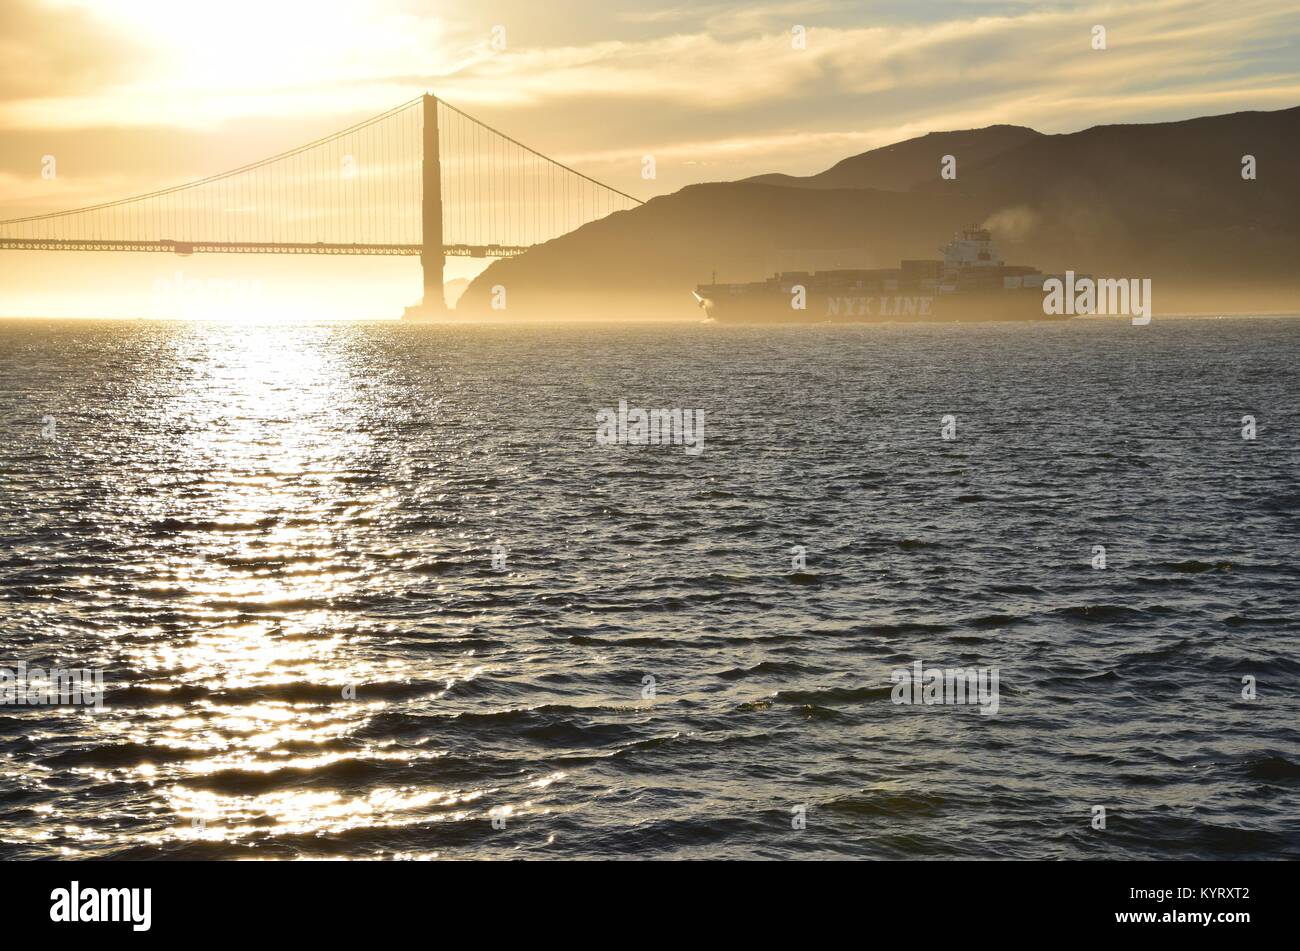 Buque portacontenedores NYK Constelación sale de San Francisco Bay bajo el puente Golden Gate en el atardecer. Foto de stock